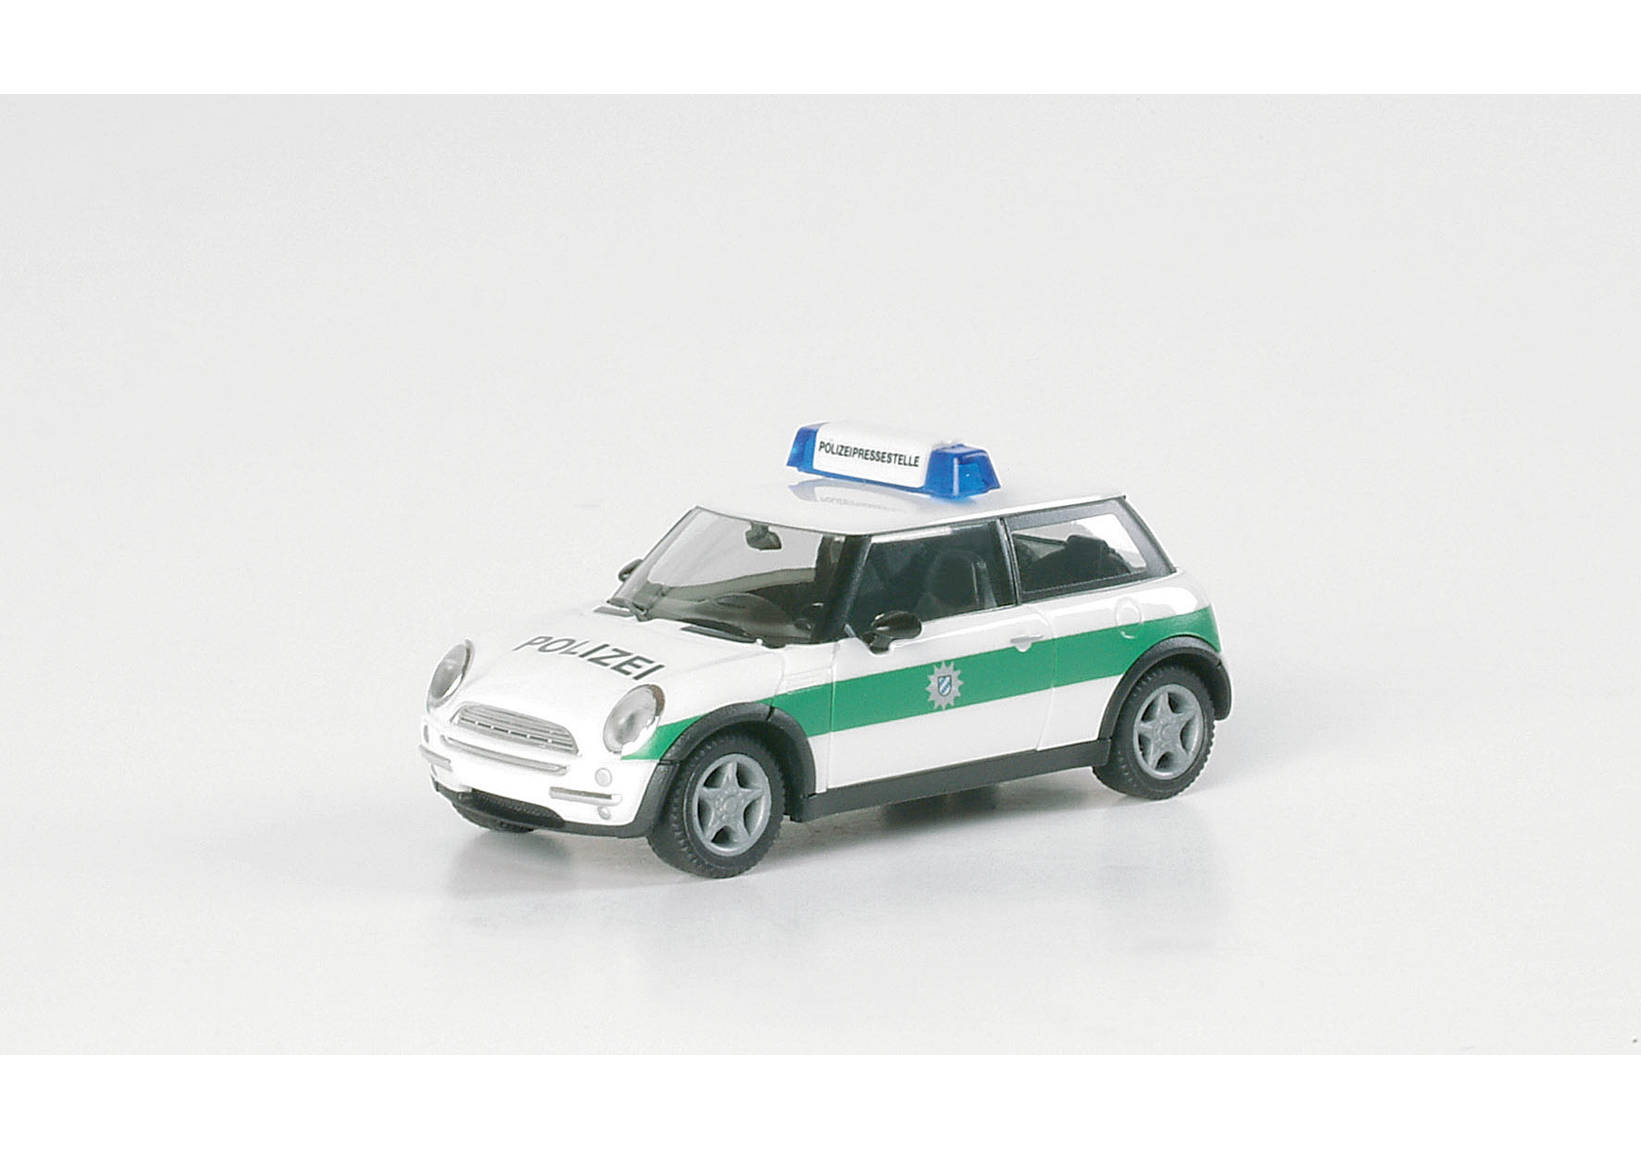 Mini Cooper "Police Munich"